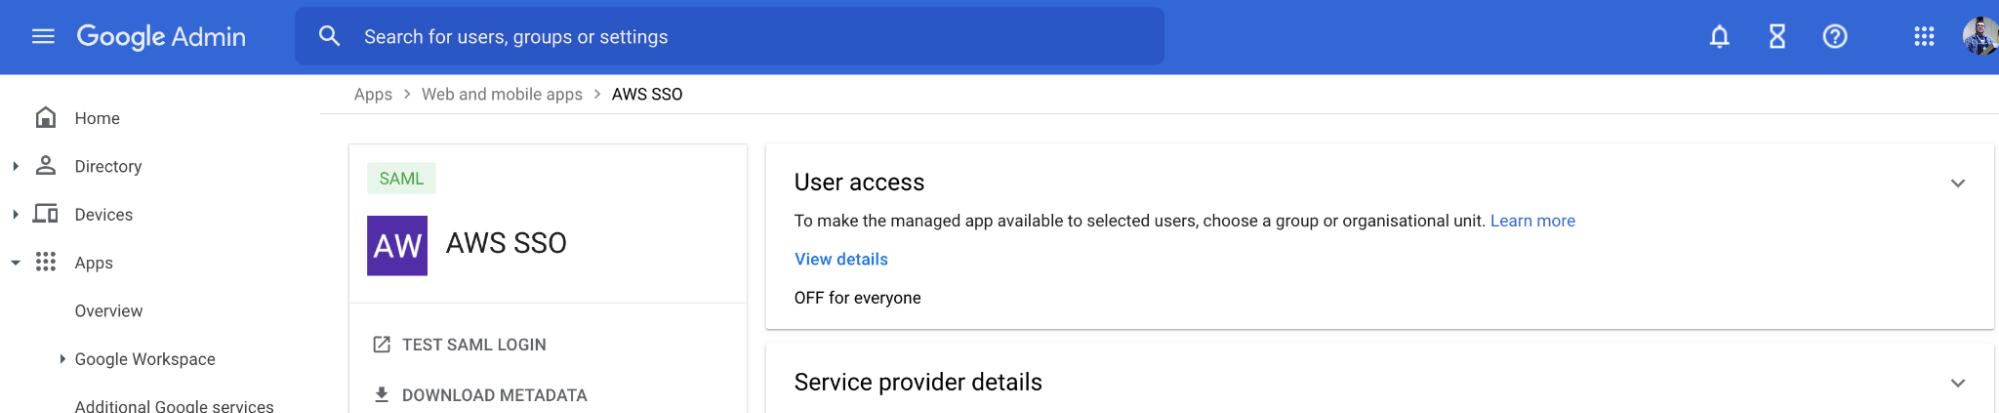 User access settings